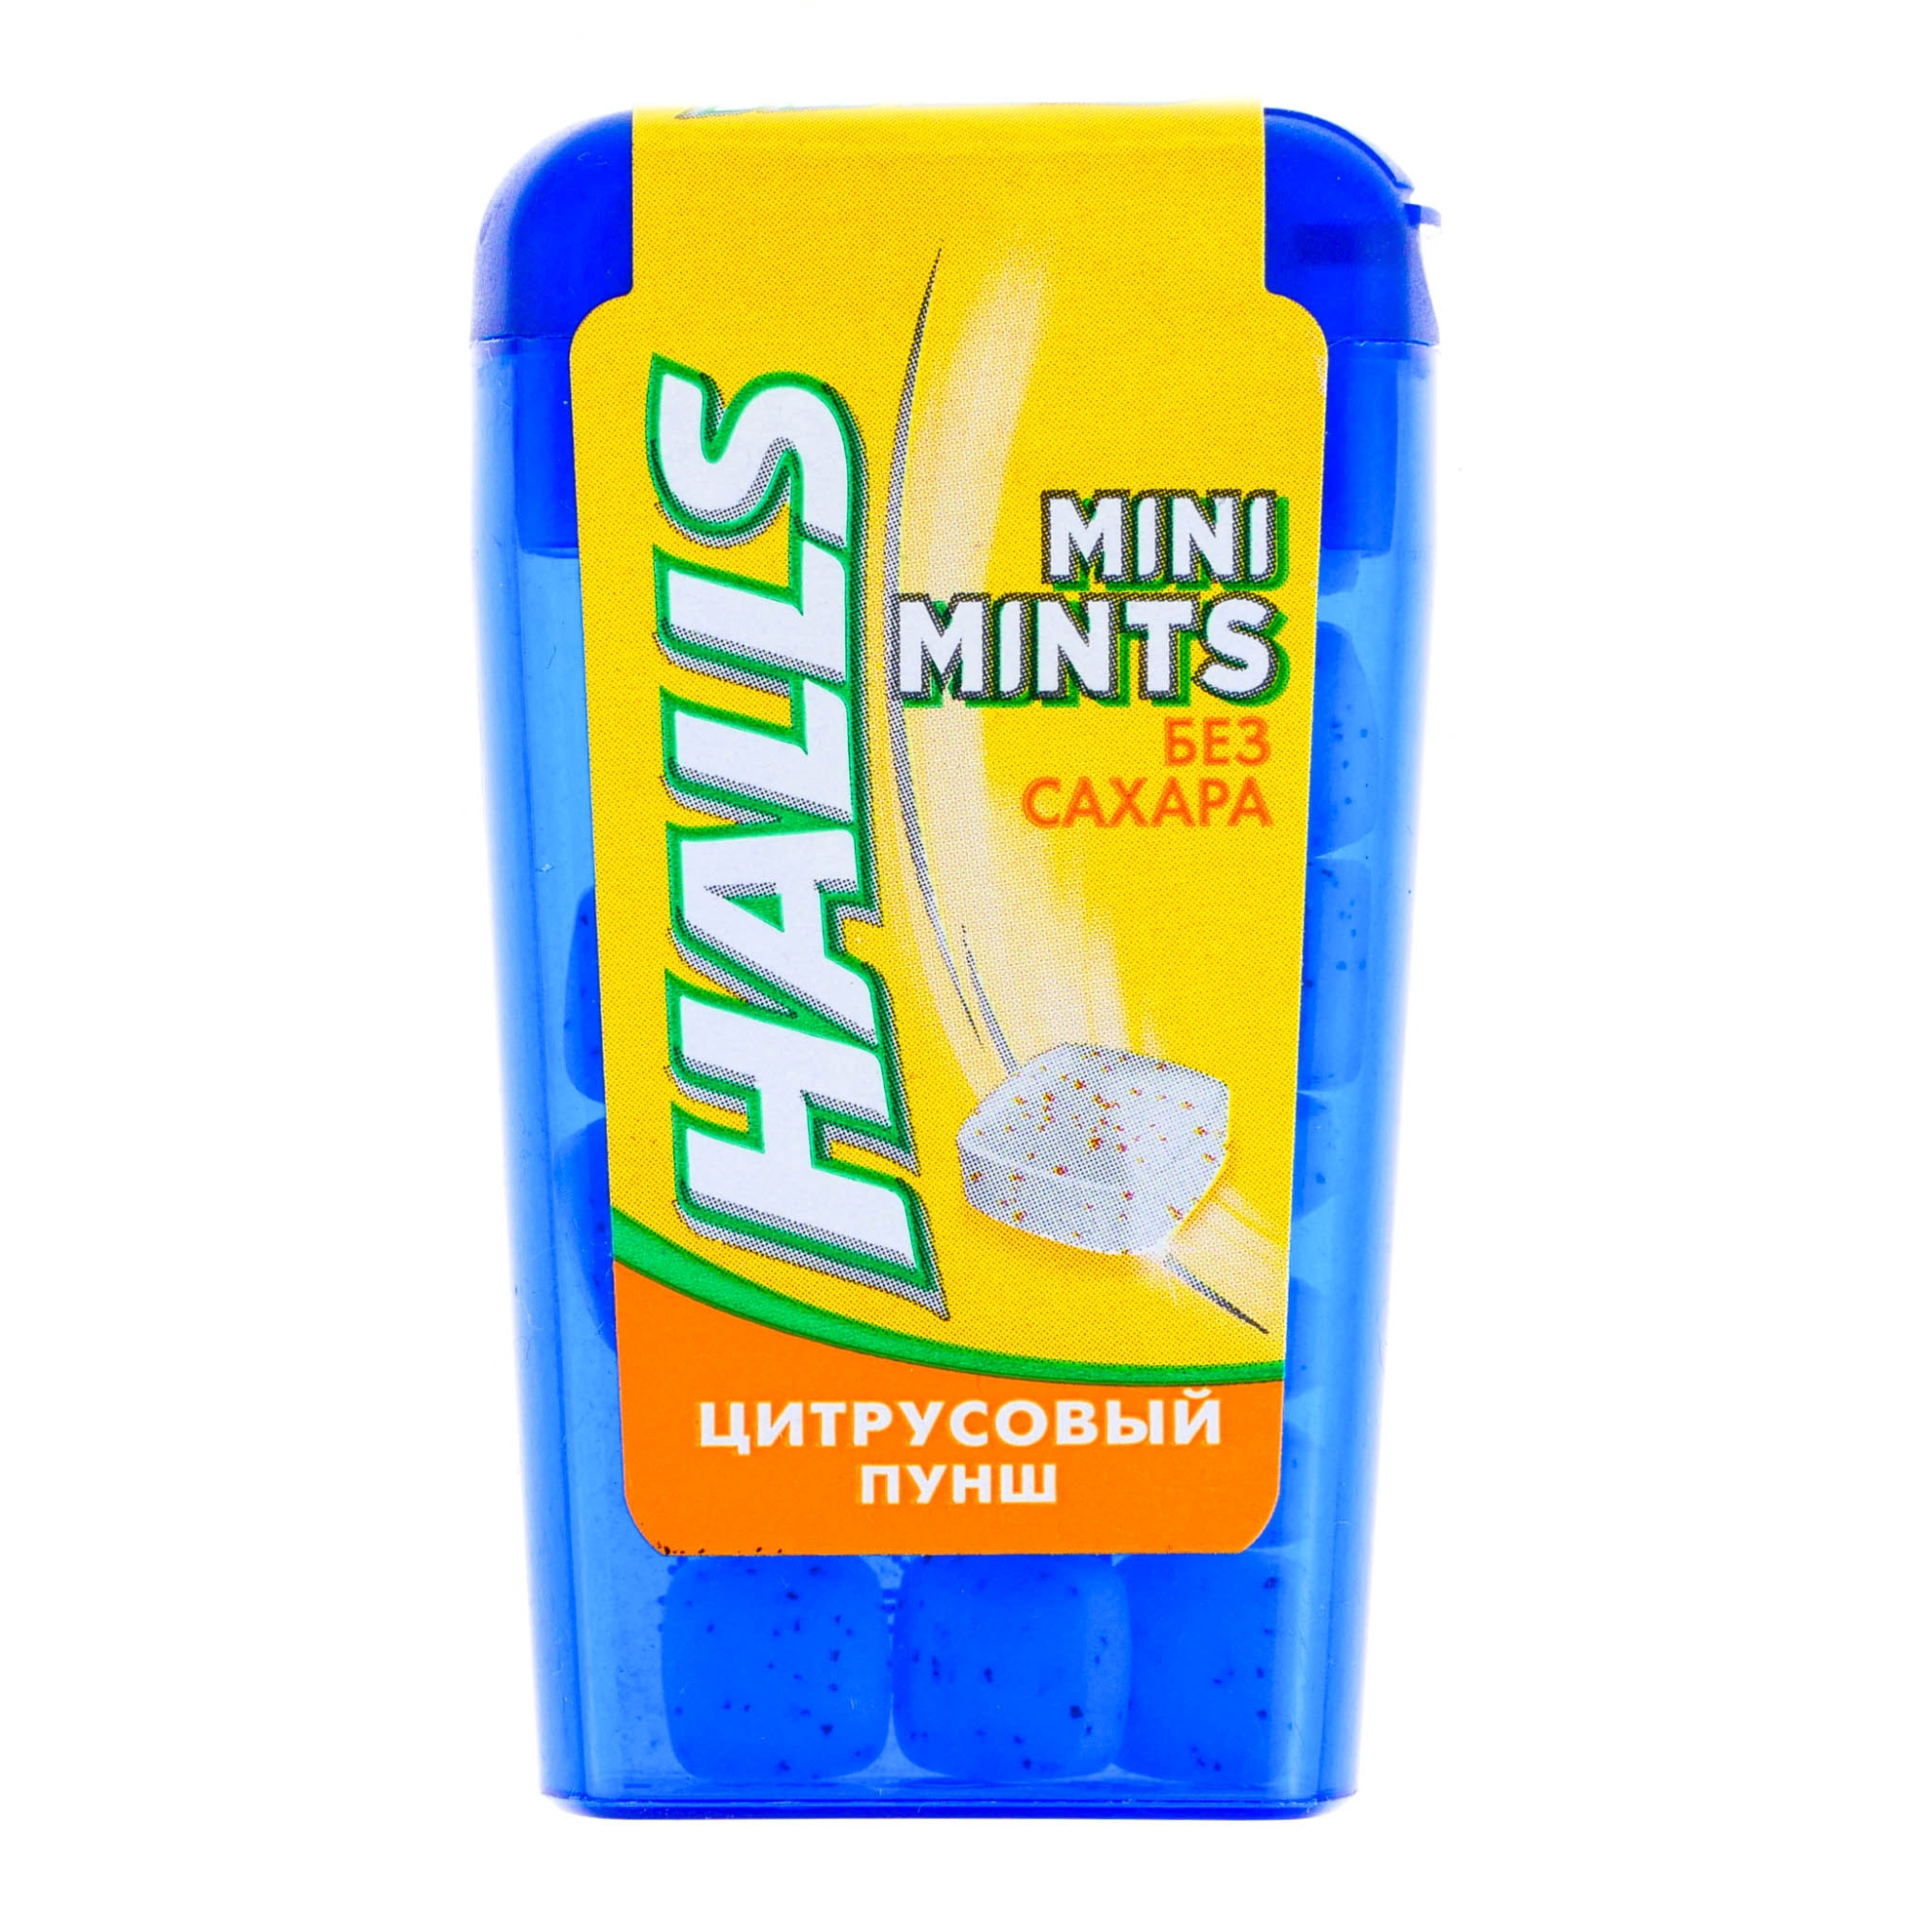 Конфеты Halls Mini Mints Цитрусовый пунш, 12,5 см конфеты halls mini mints со вкусом арбуза без сахара 12 5г